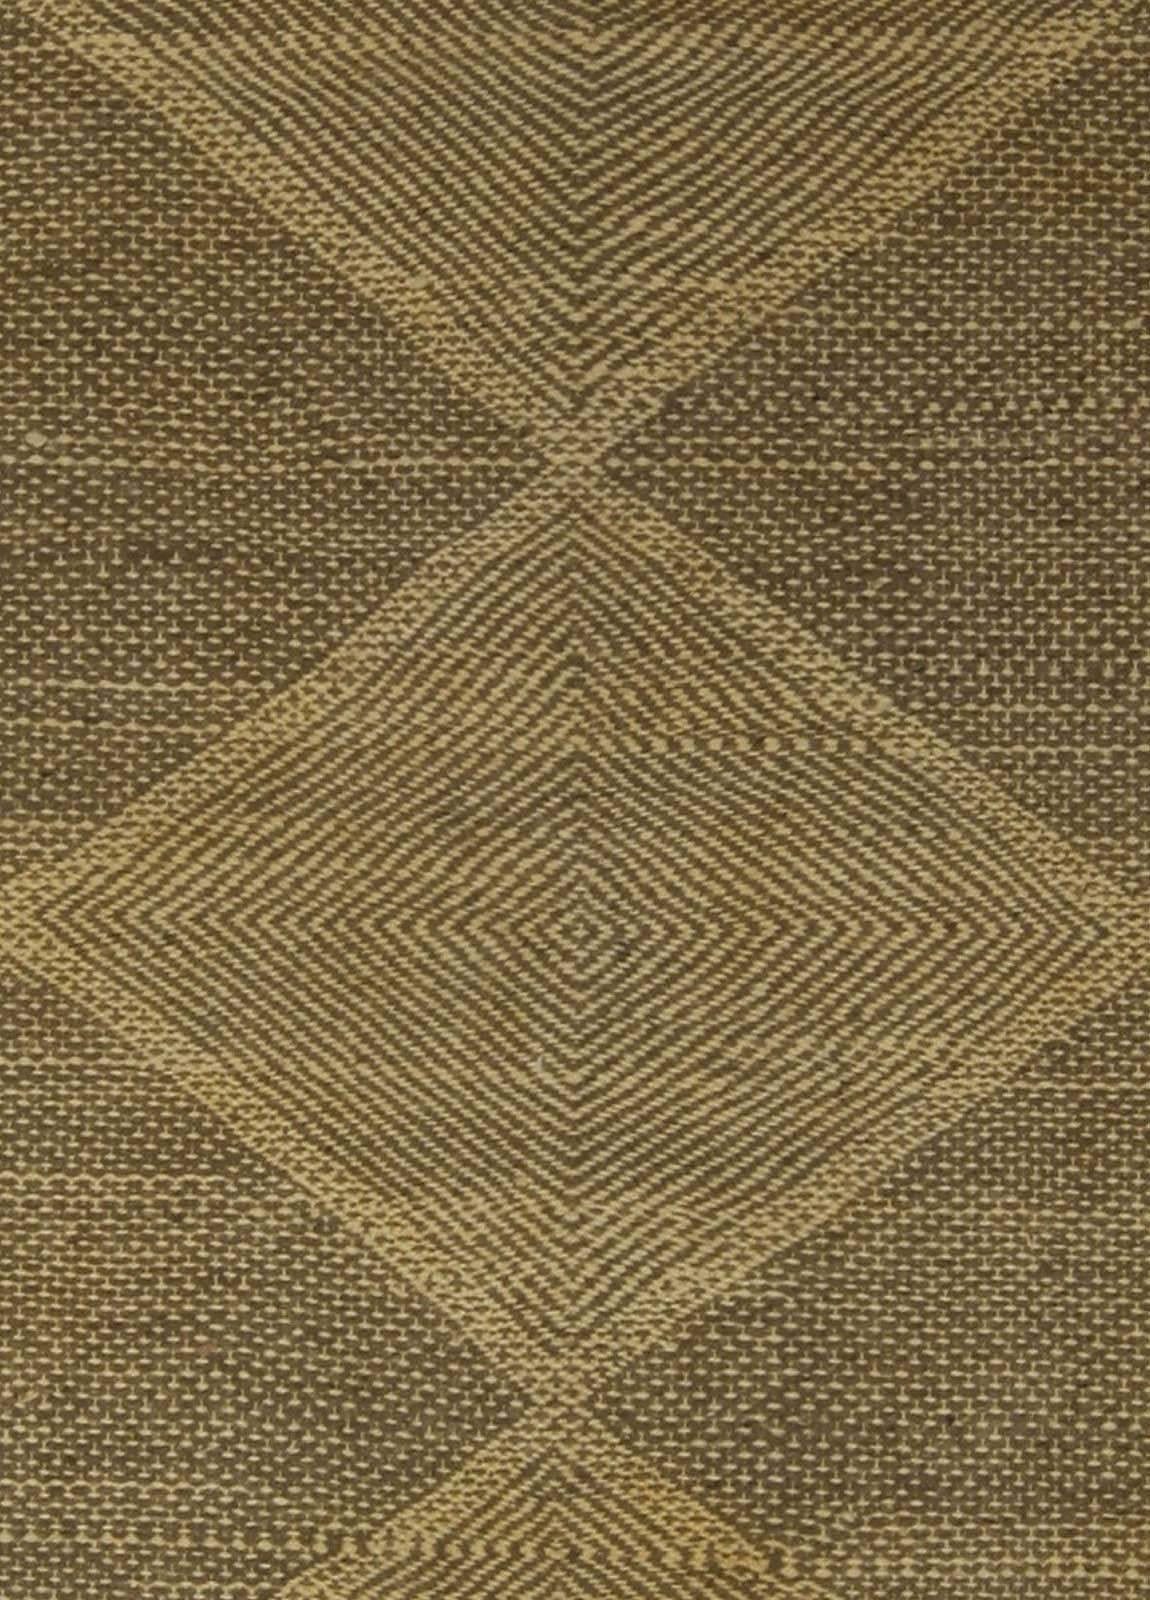 Zeitgenössischer rautenförmiger brauner und beiger Flachgewebeteppich von Doris Leslie Blau.
Größe: 7'8